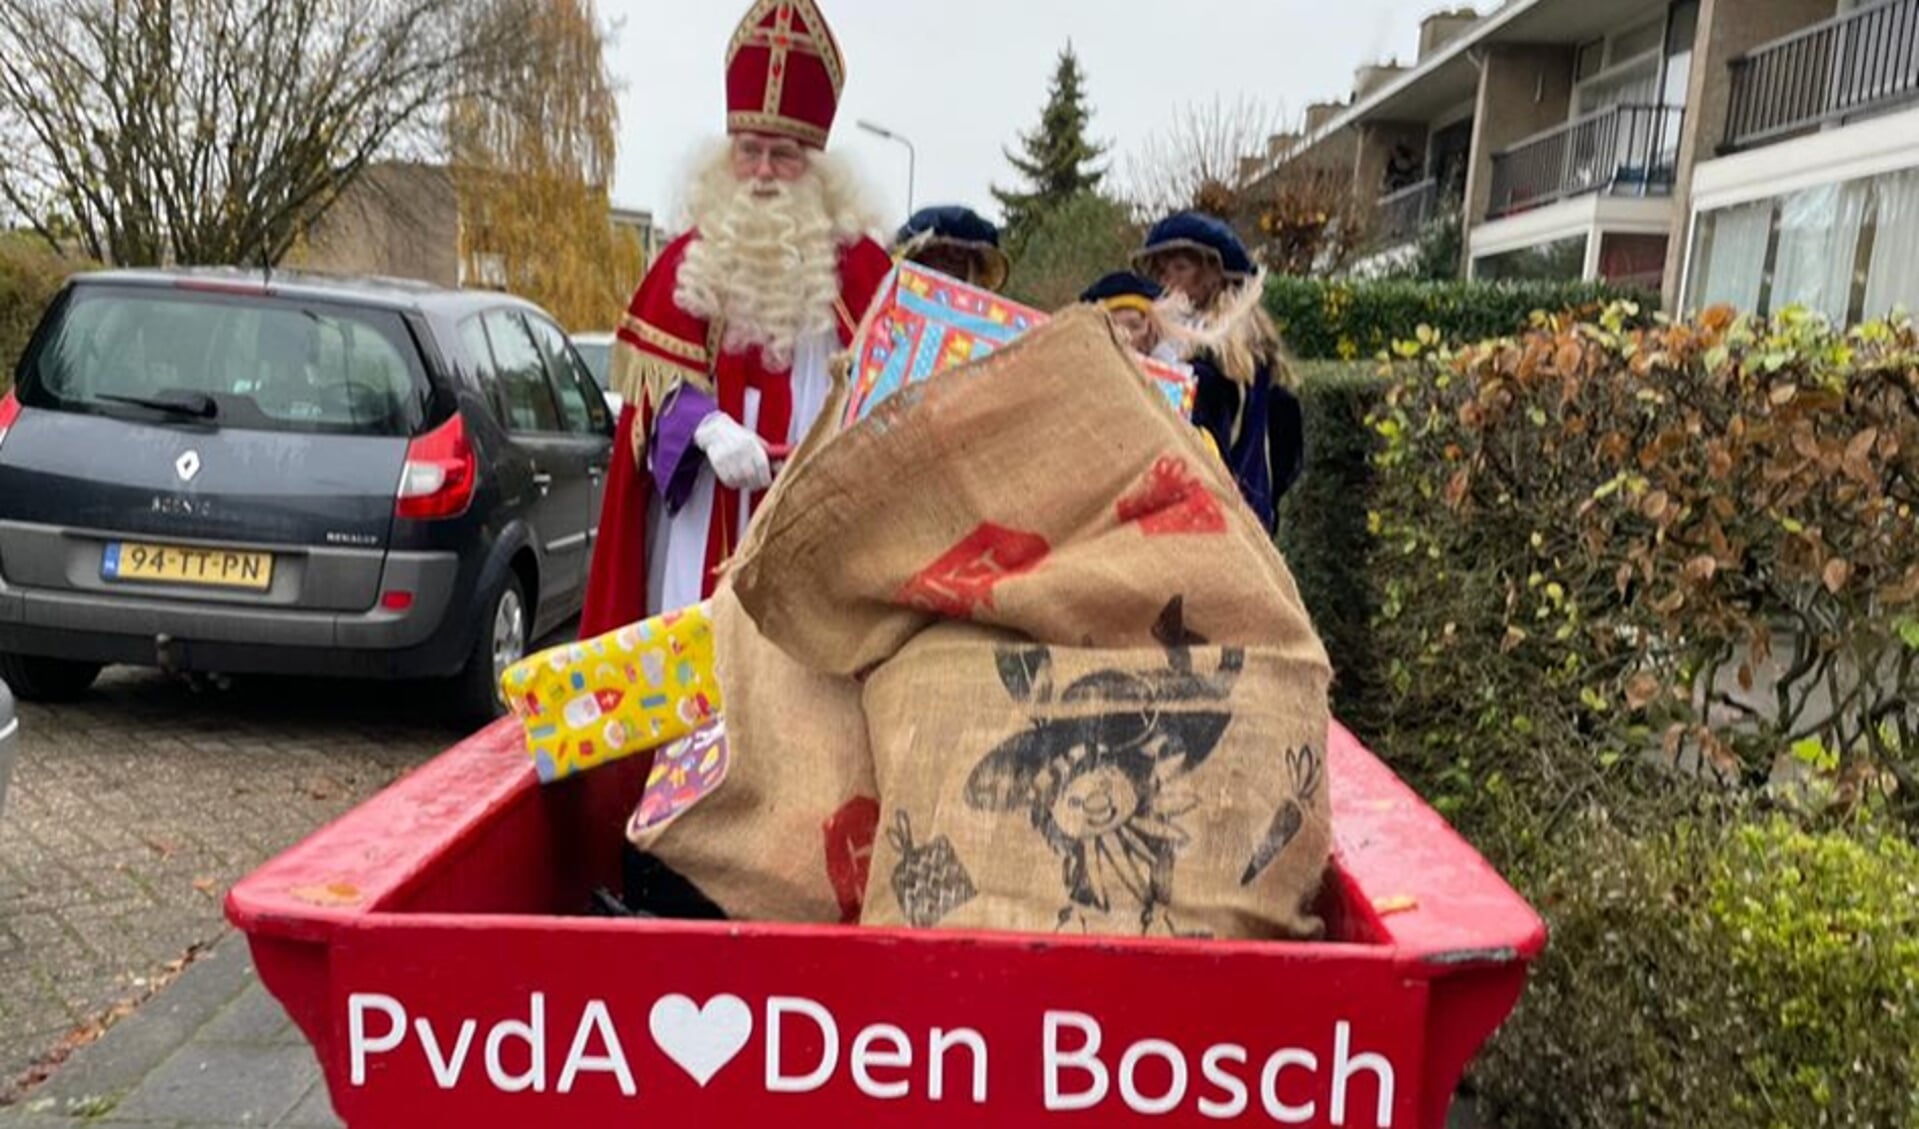 De Bossche PvdA is van mening dat ieder kind met Sinterklaas een cadeautje verdiend.